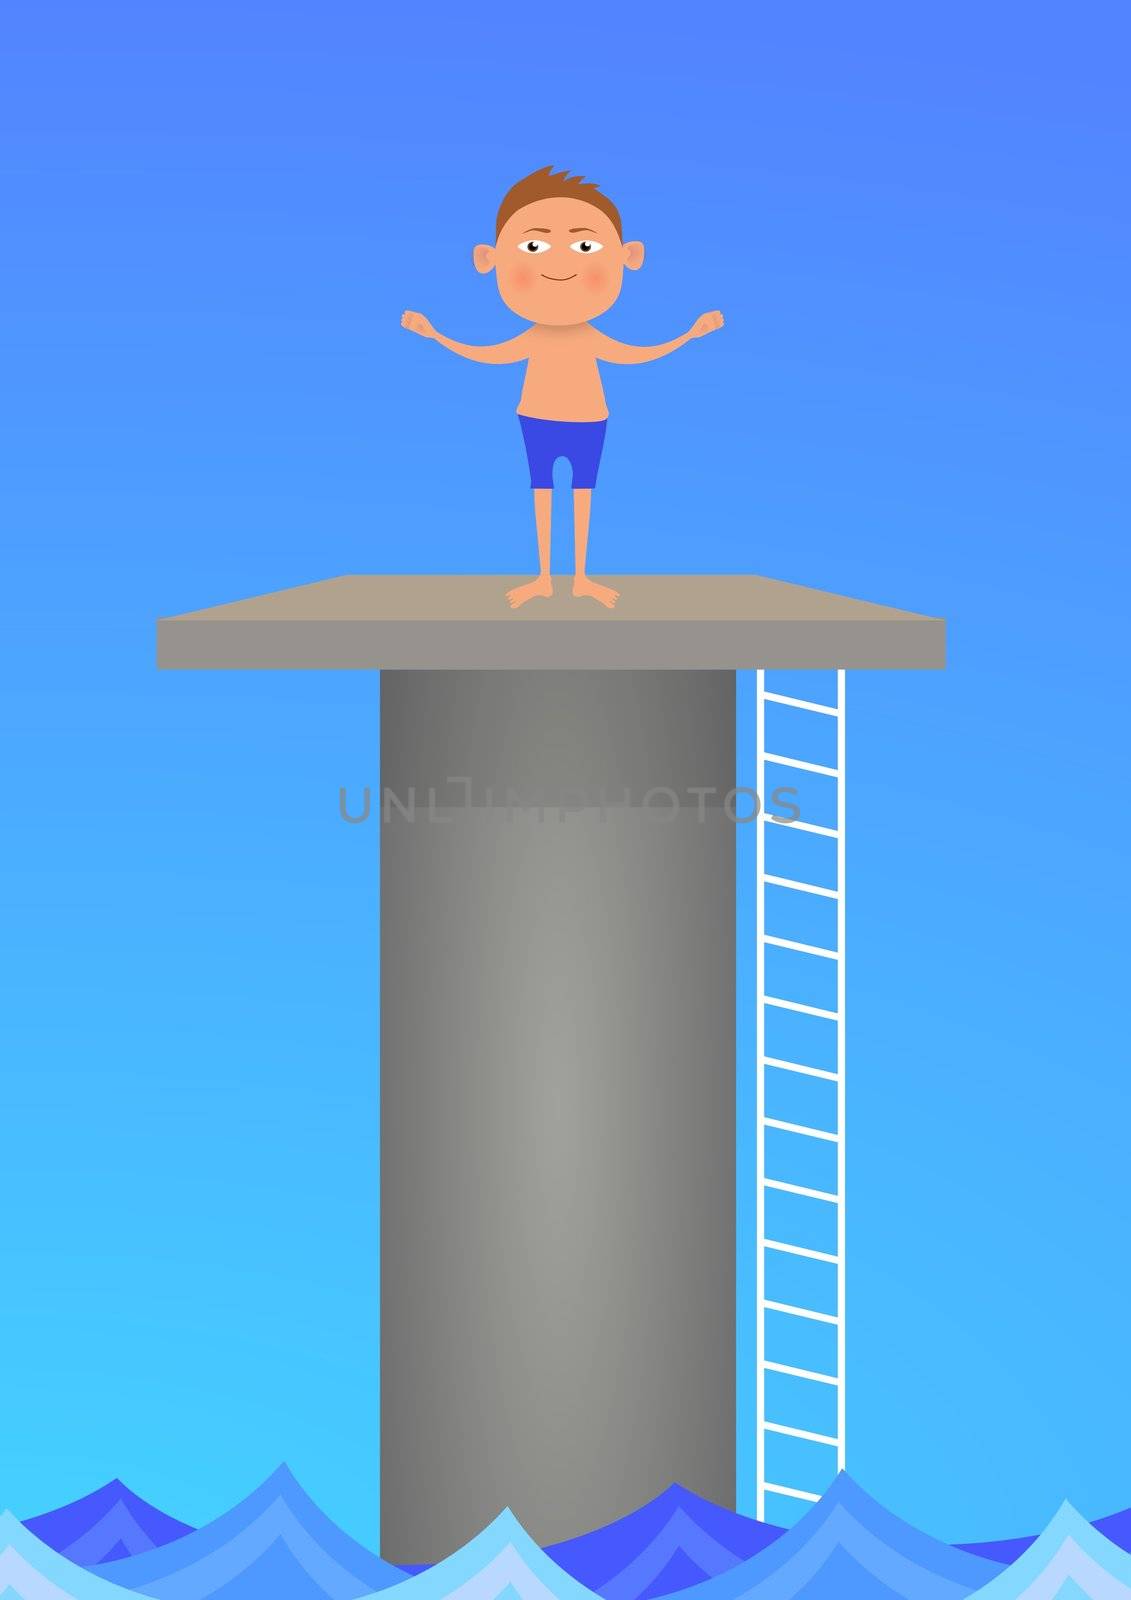 Illustration of a boy standing on a diving platform